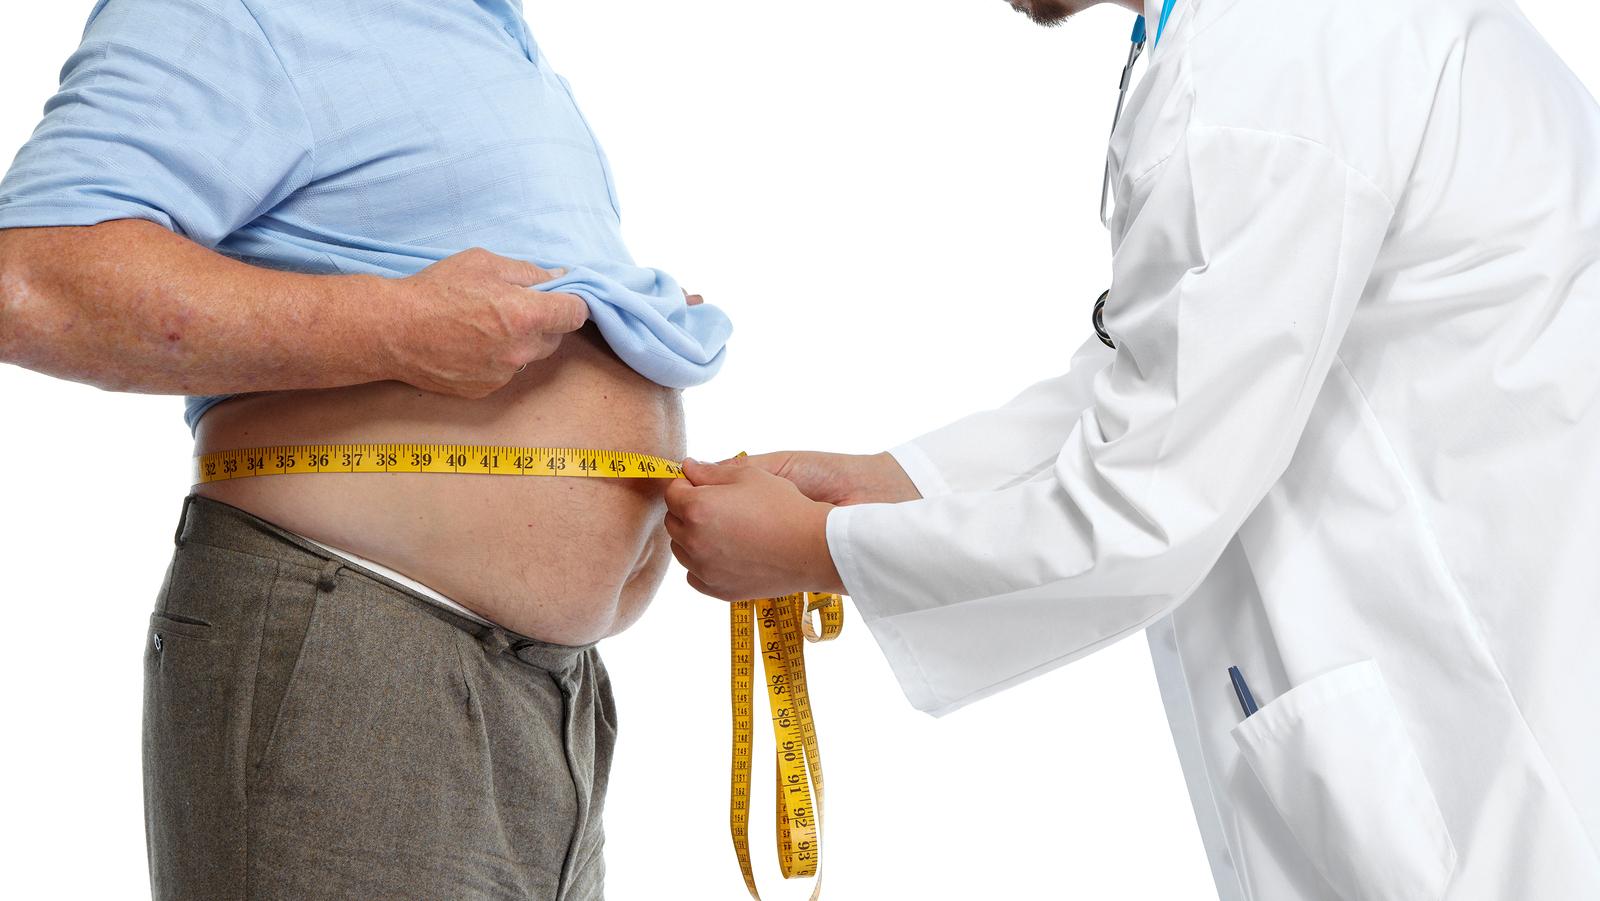 Kiderült az elhízás és a vastagbélrák közötti összefüggés